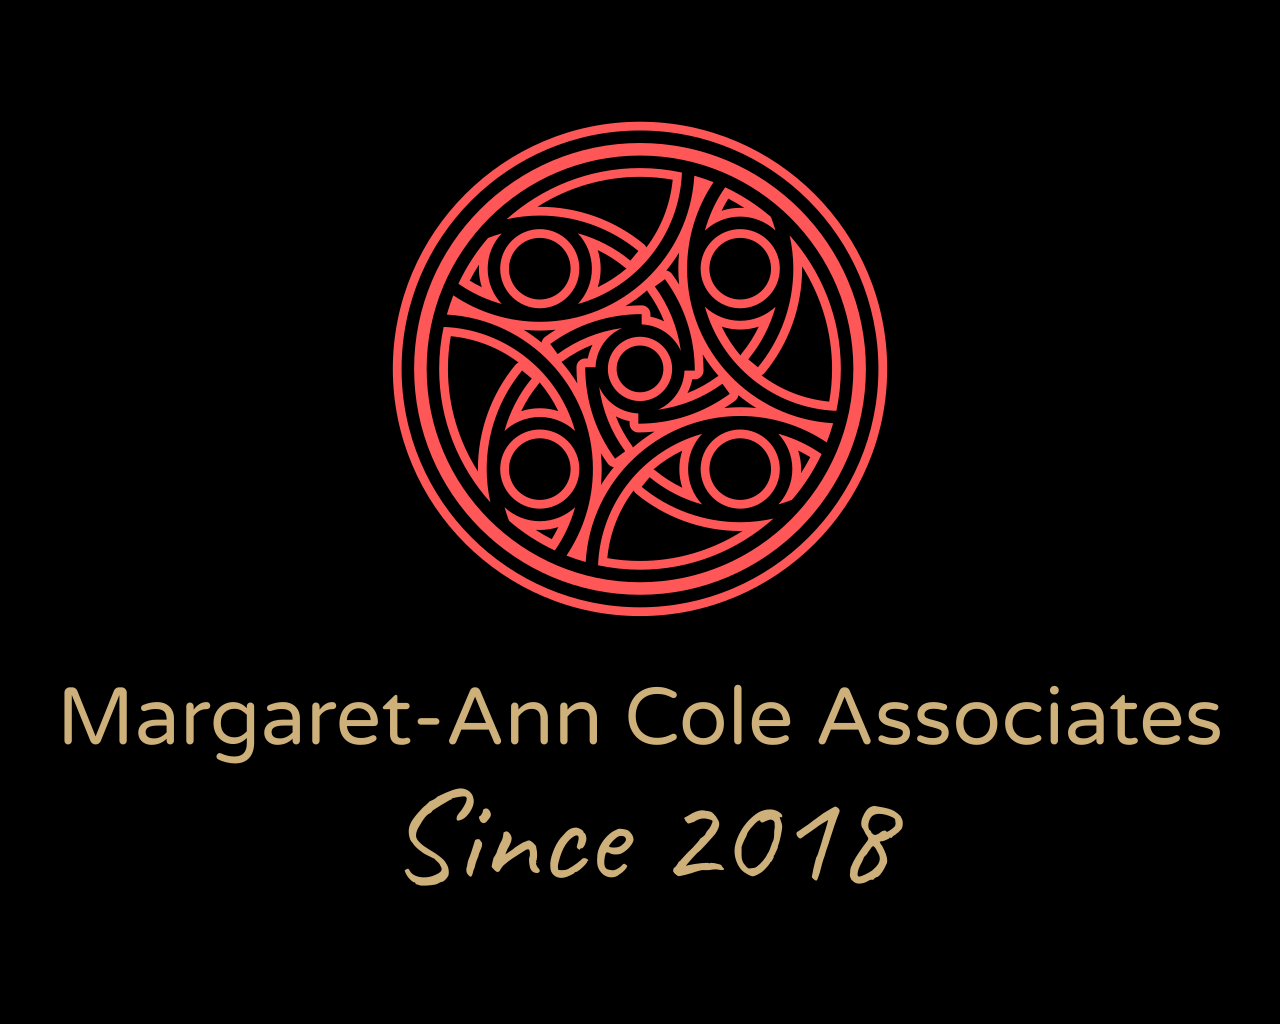 Margaret-Ann Cole Associates